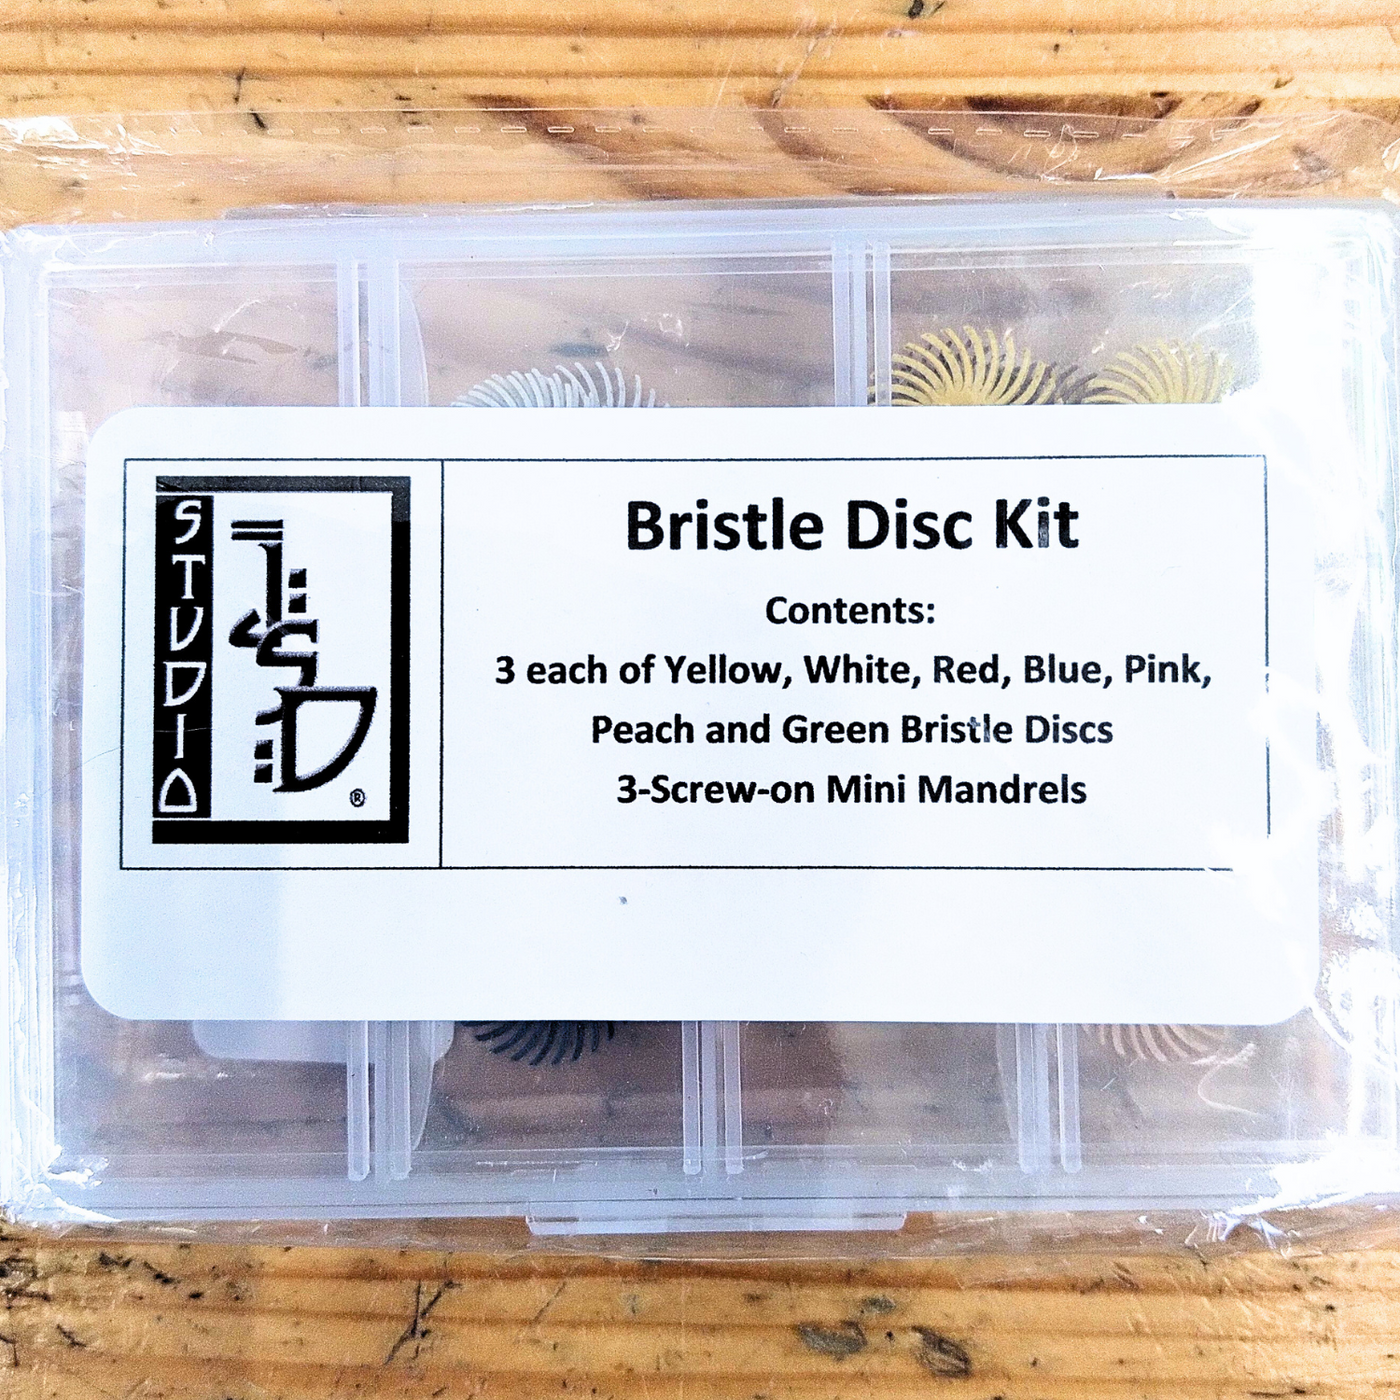 3M Bristle Disc Kit